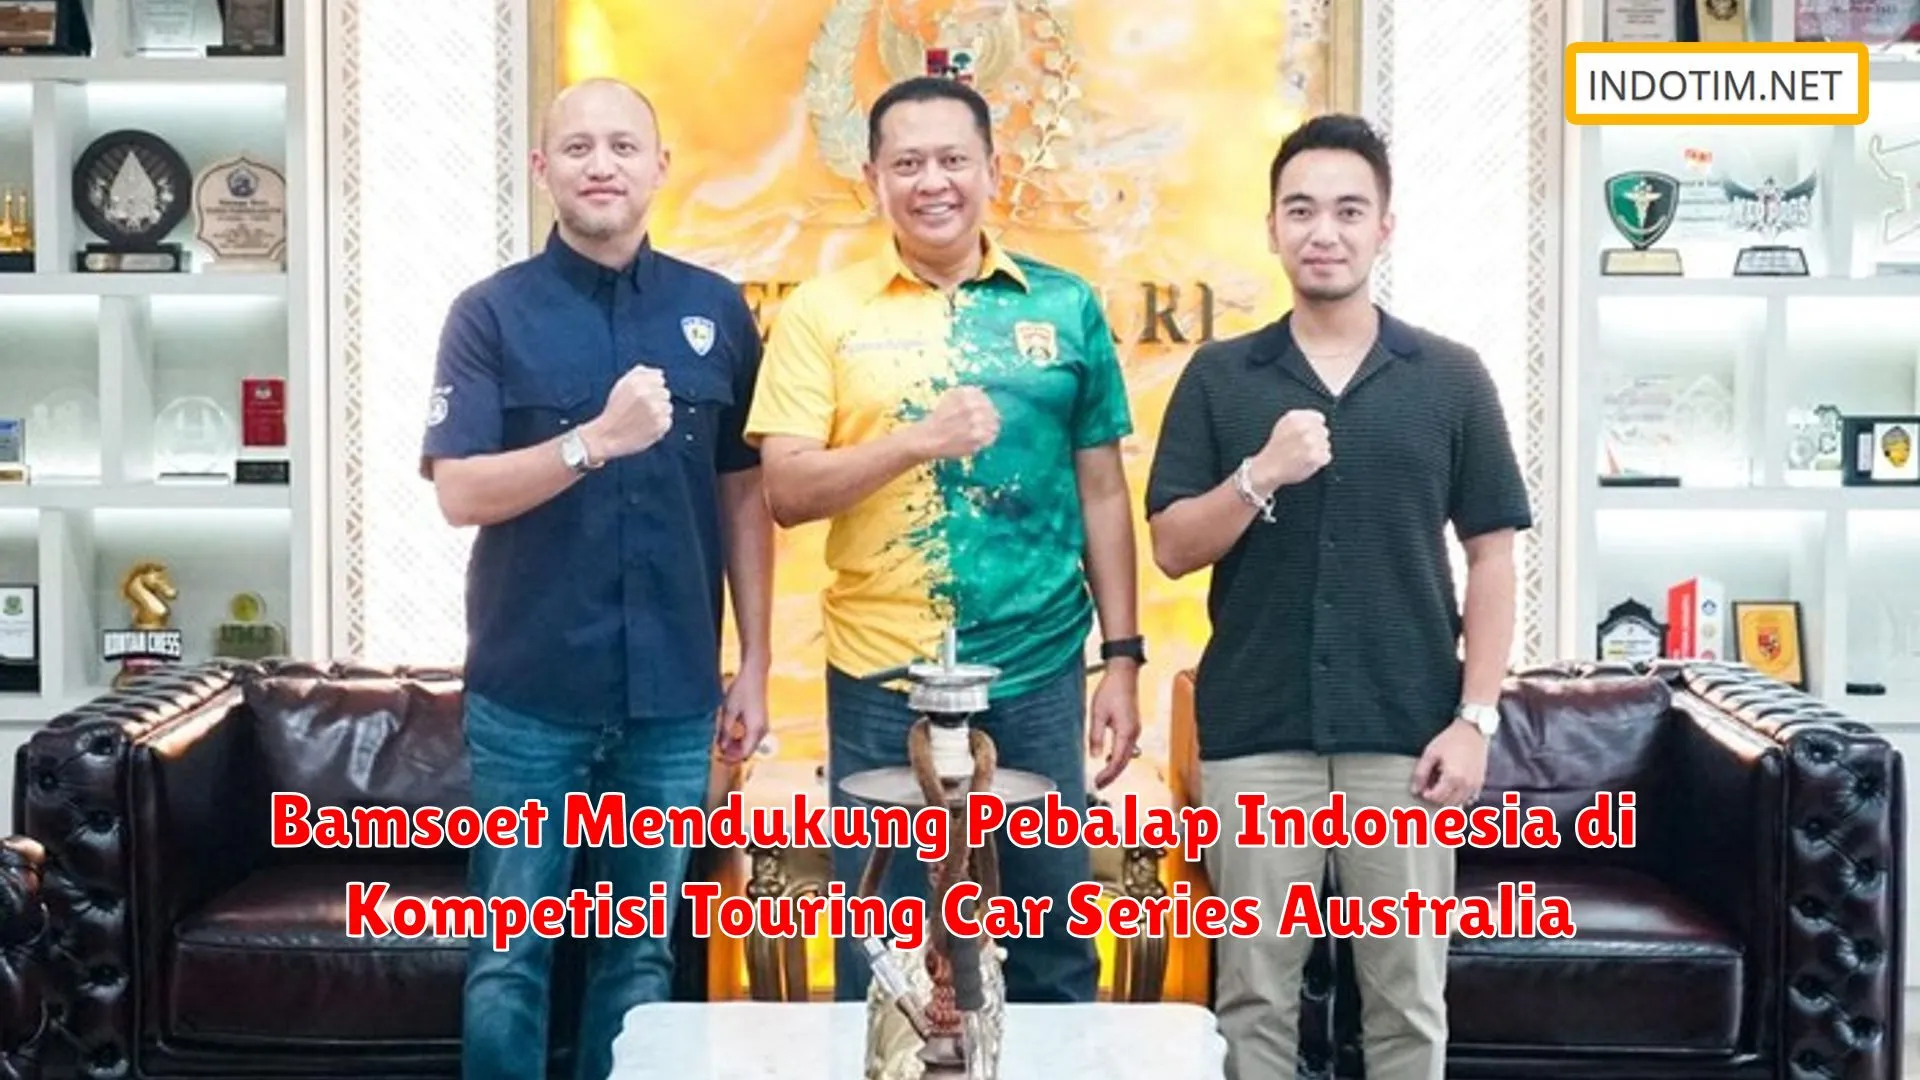 Bamsoet Mendukung Pebalap Indonesia di Kompetisi Touring Car Series Australia